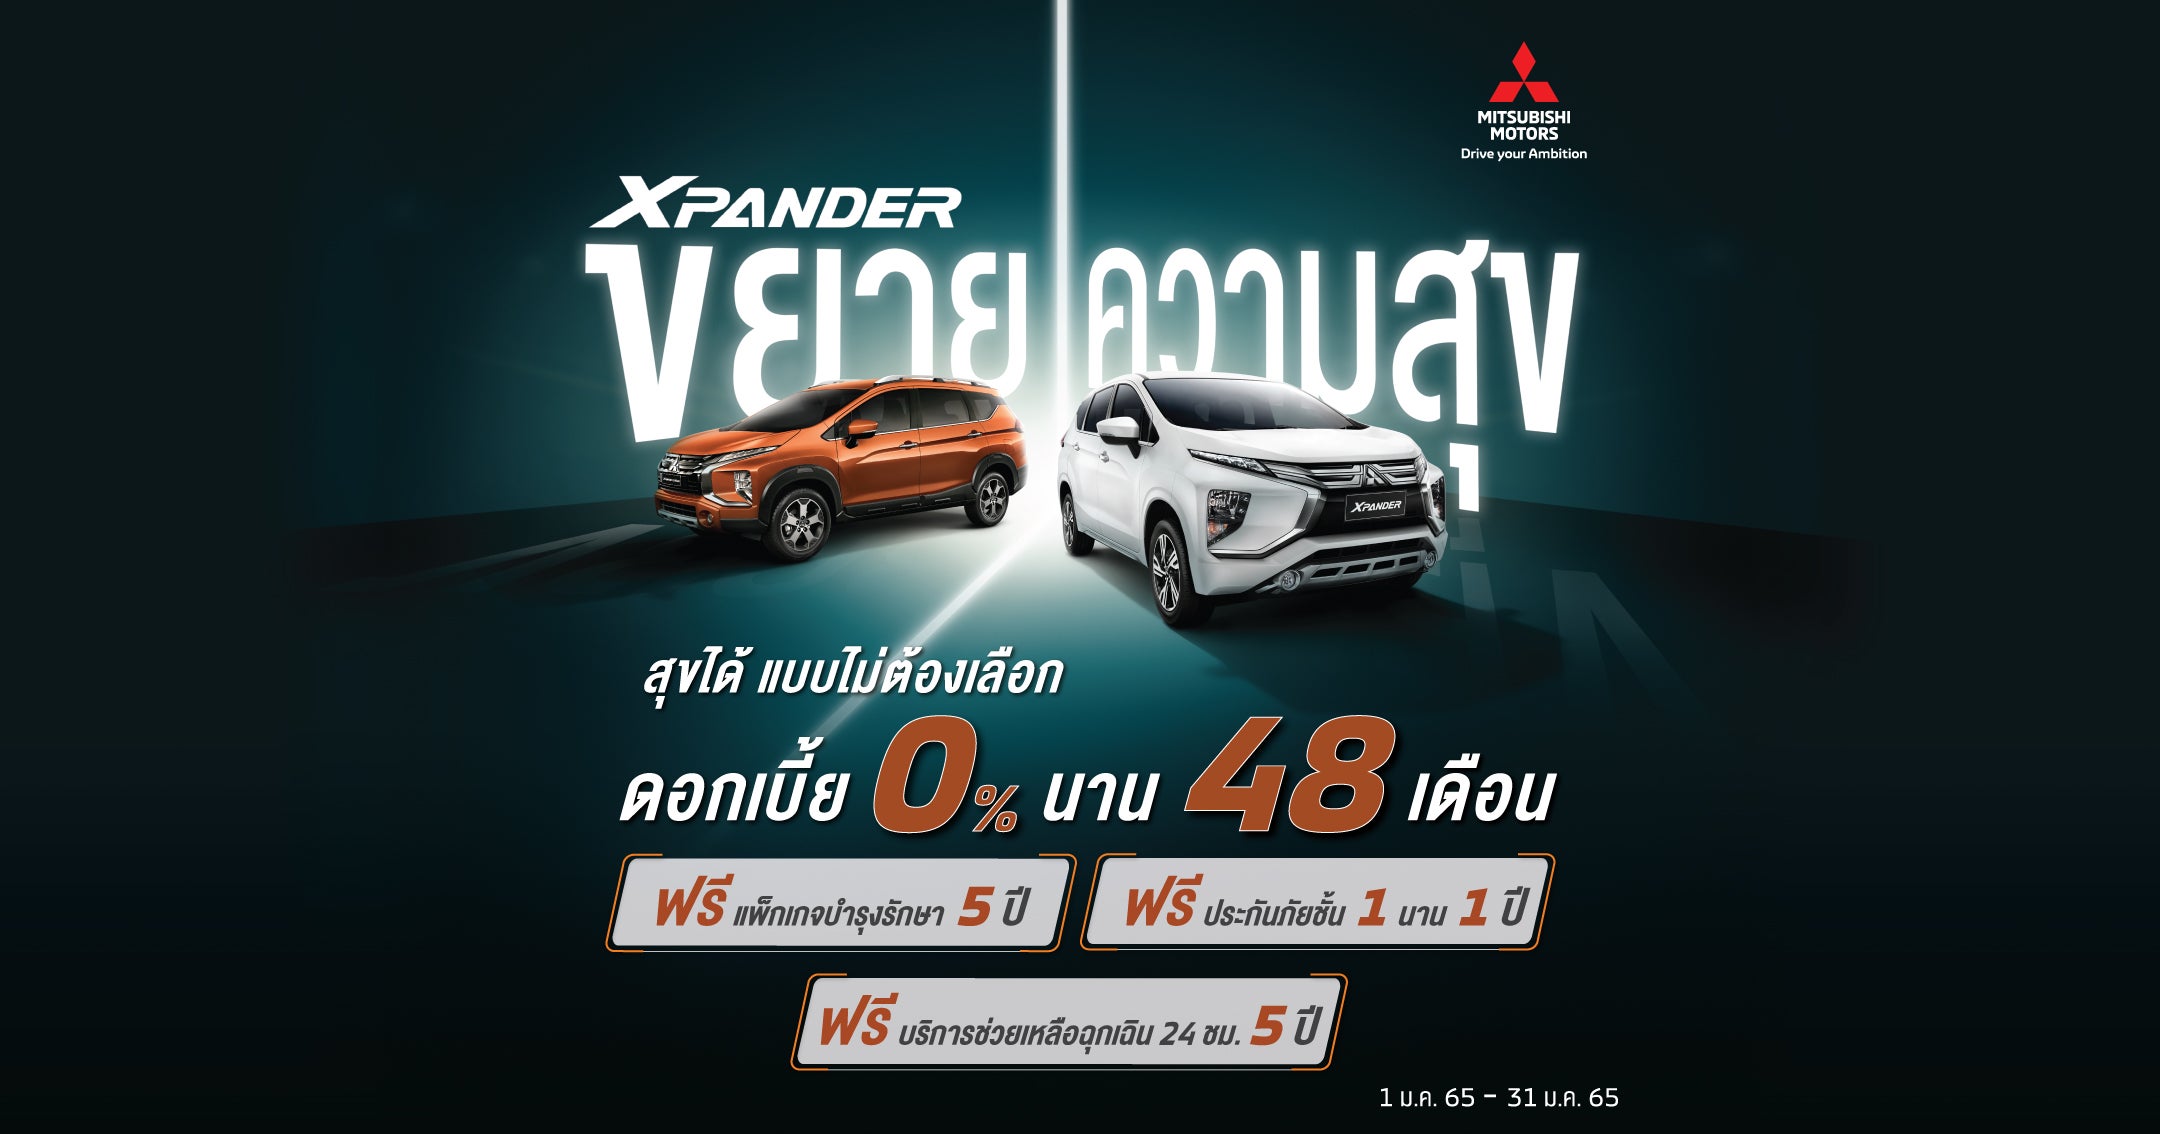 Mitsubishi Xpander ขยายความสุข ดอกเบี้ยพิเศษ 0% 48 เดือน